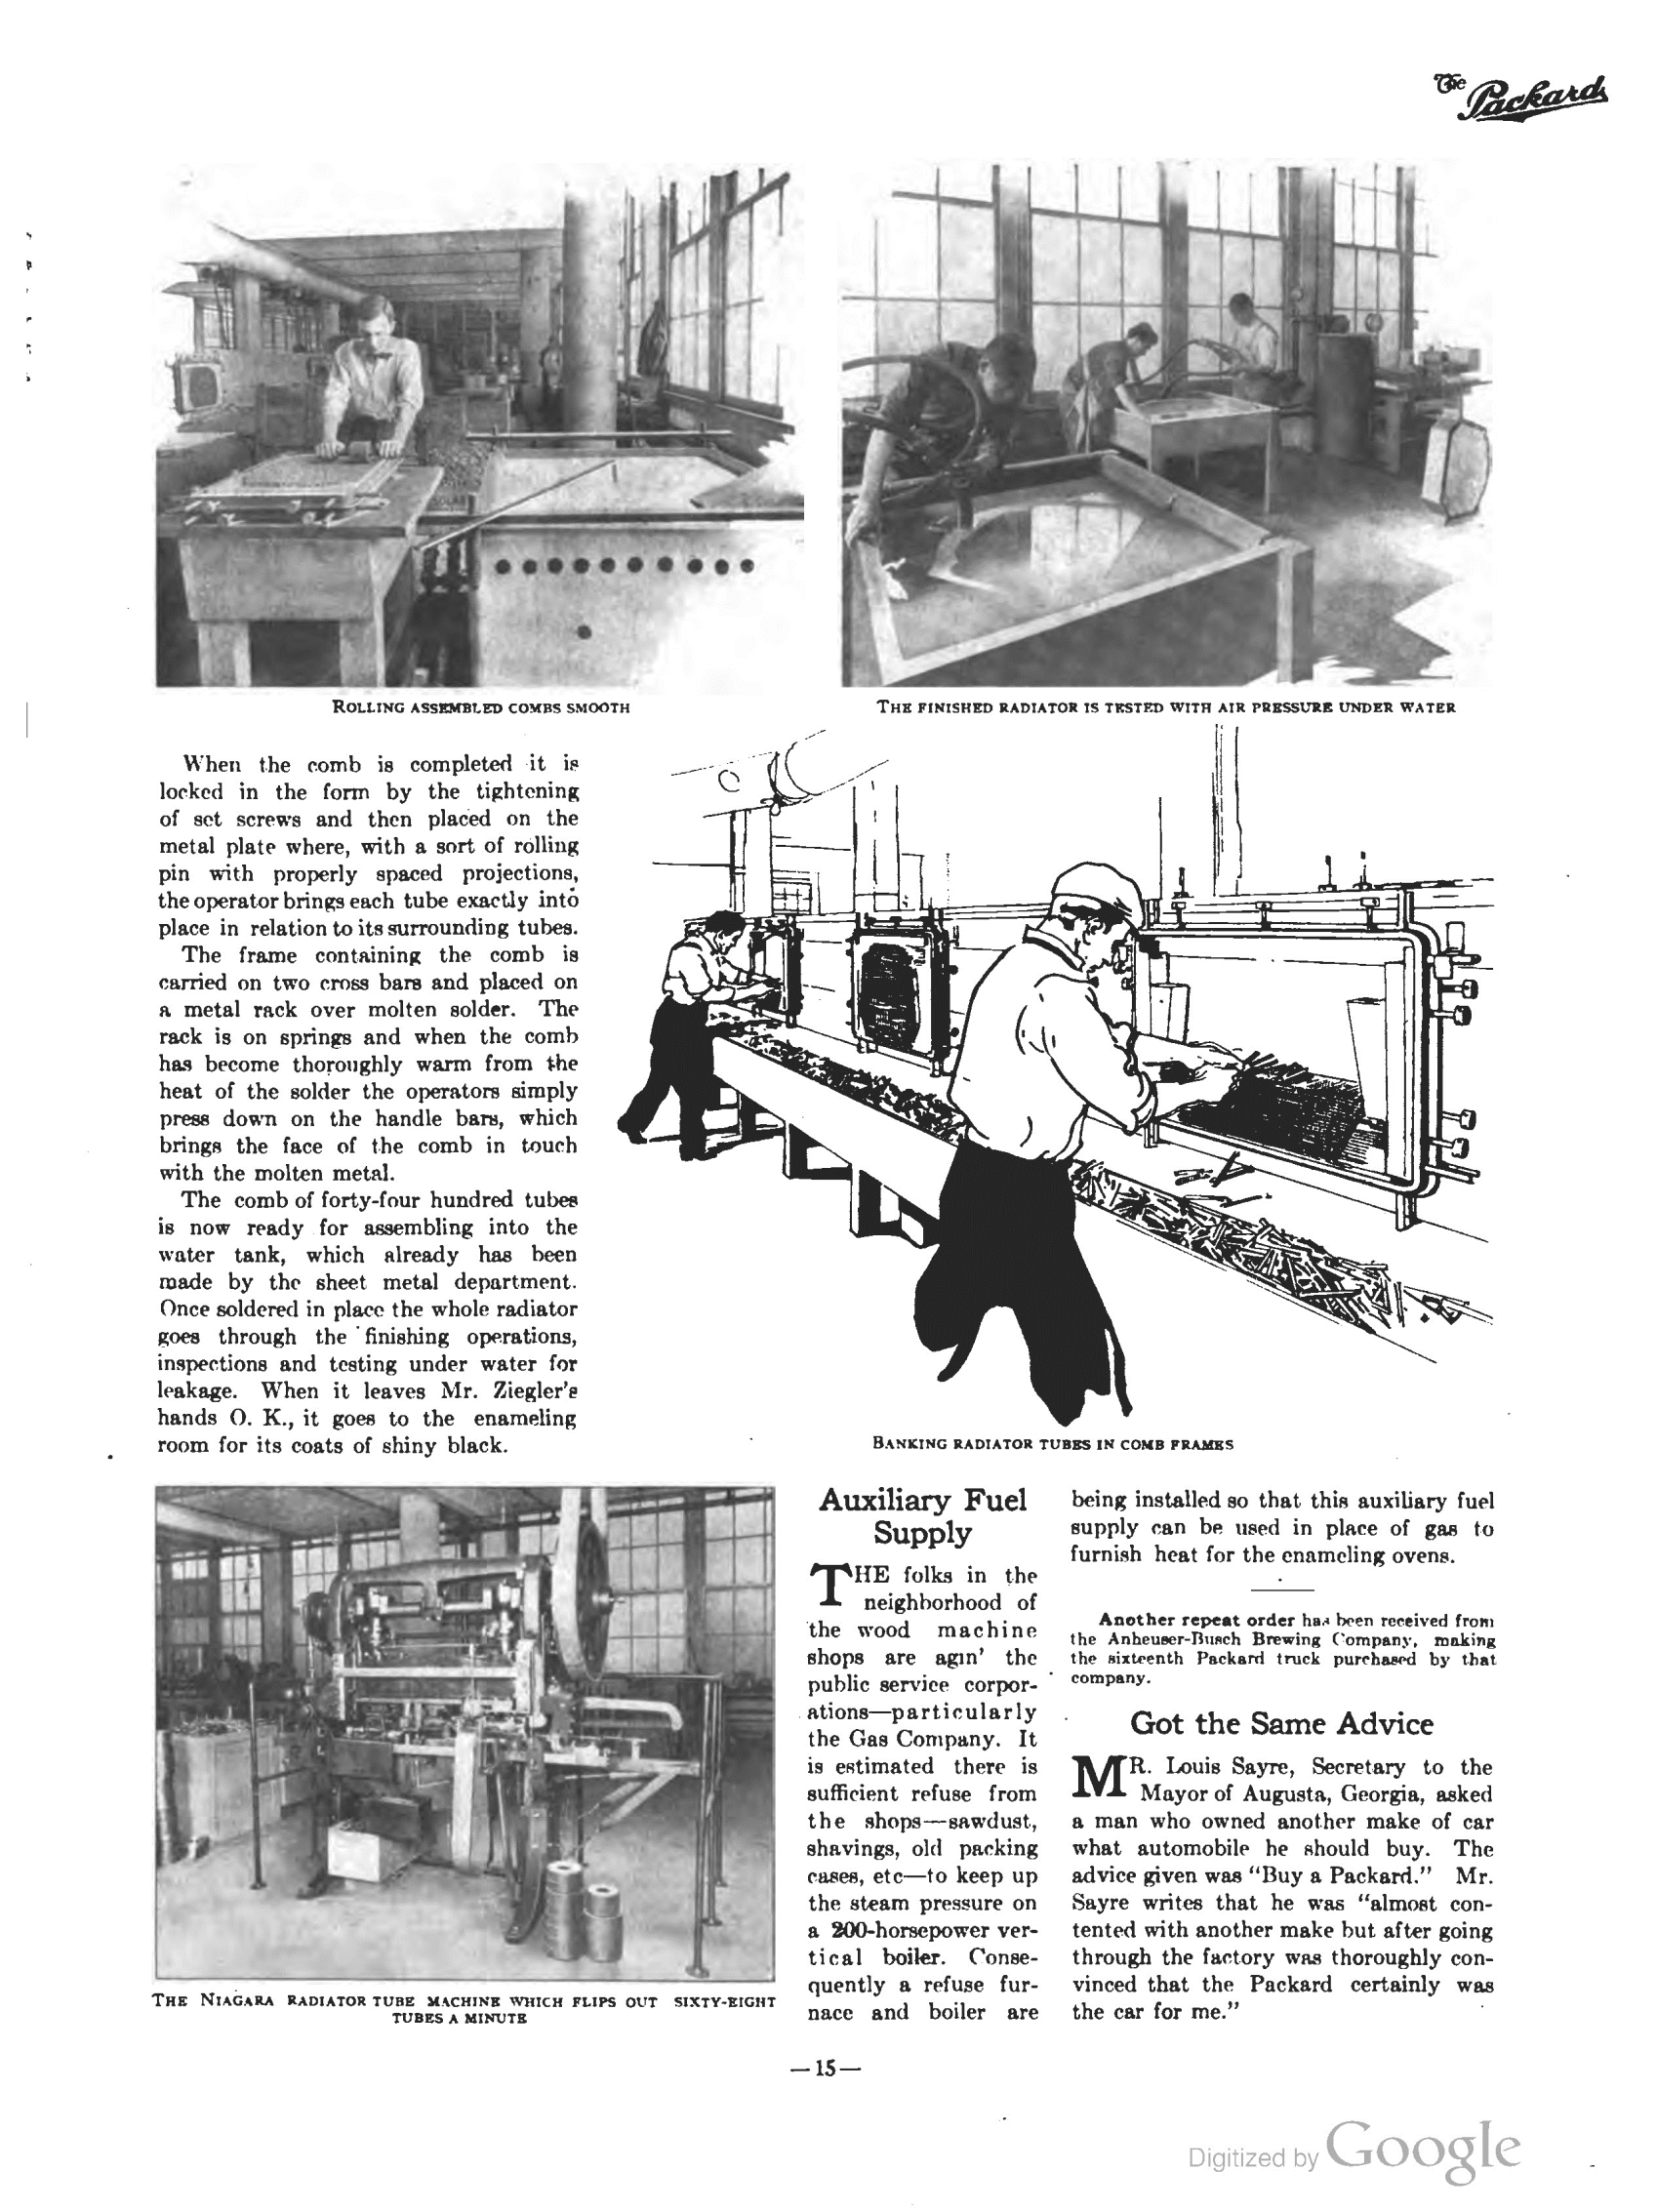 1910_The_Packard_Newsletter-177